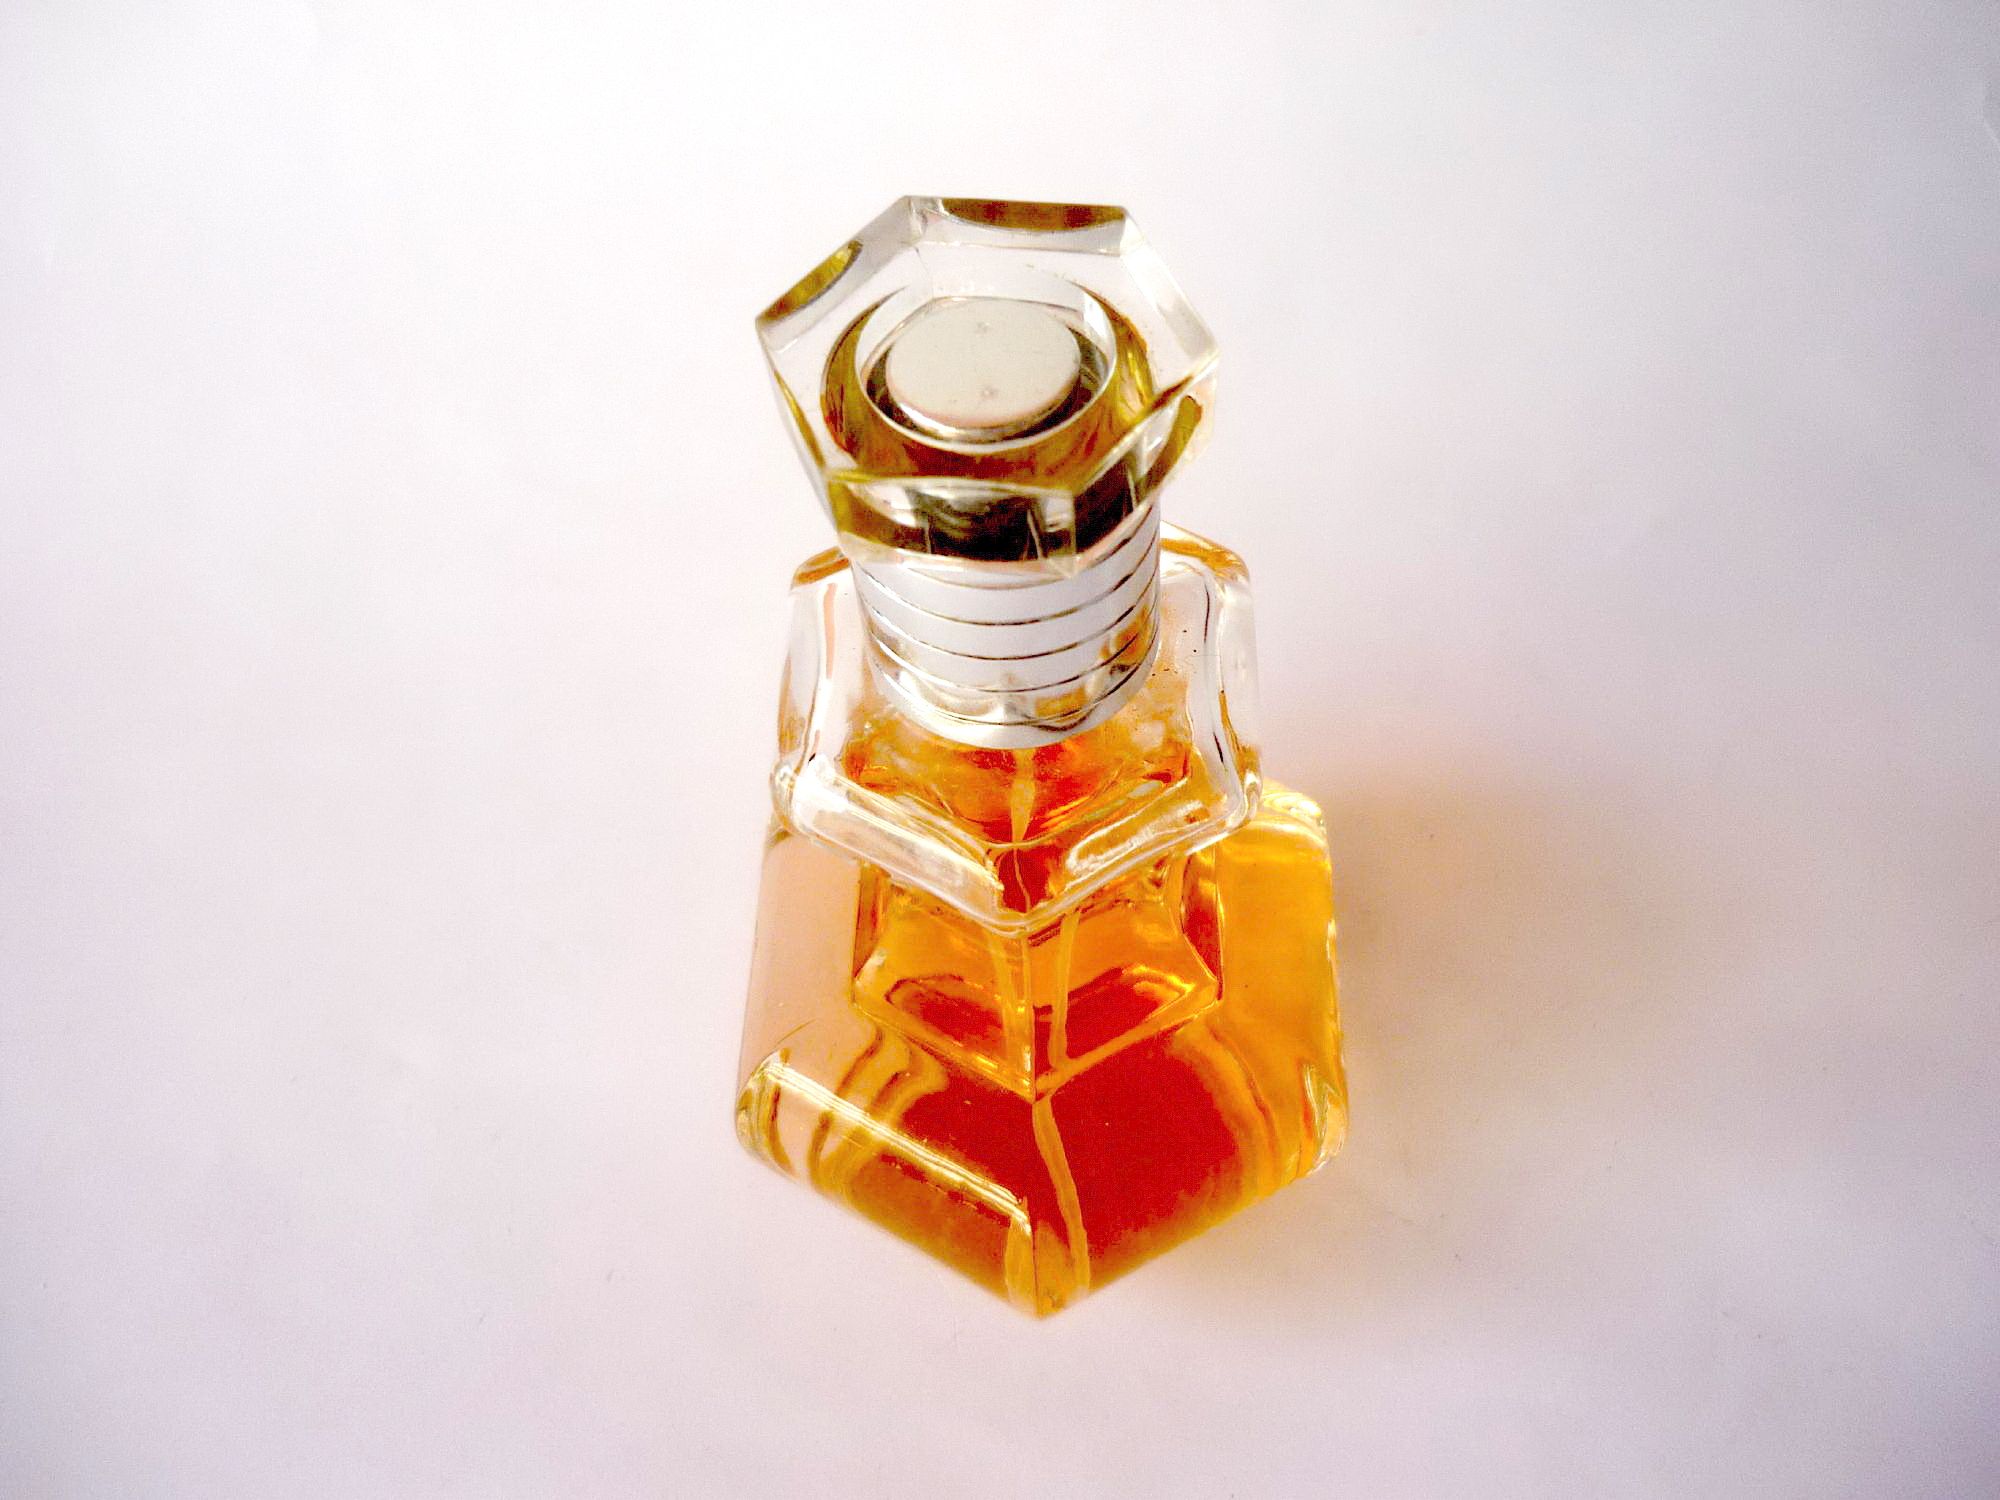 Arabic perfumes photo